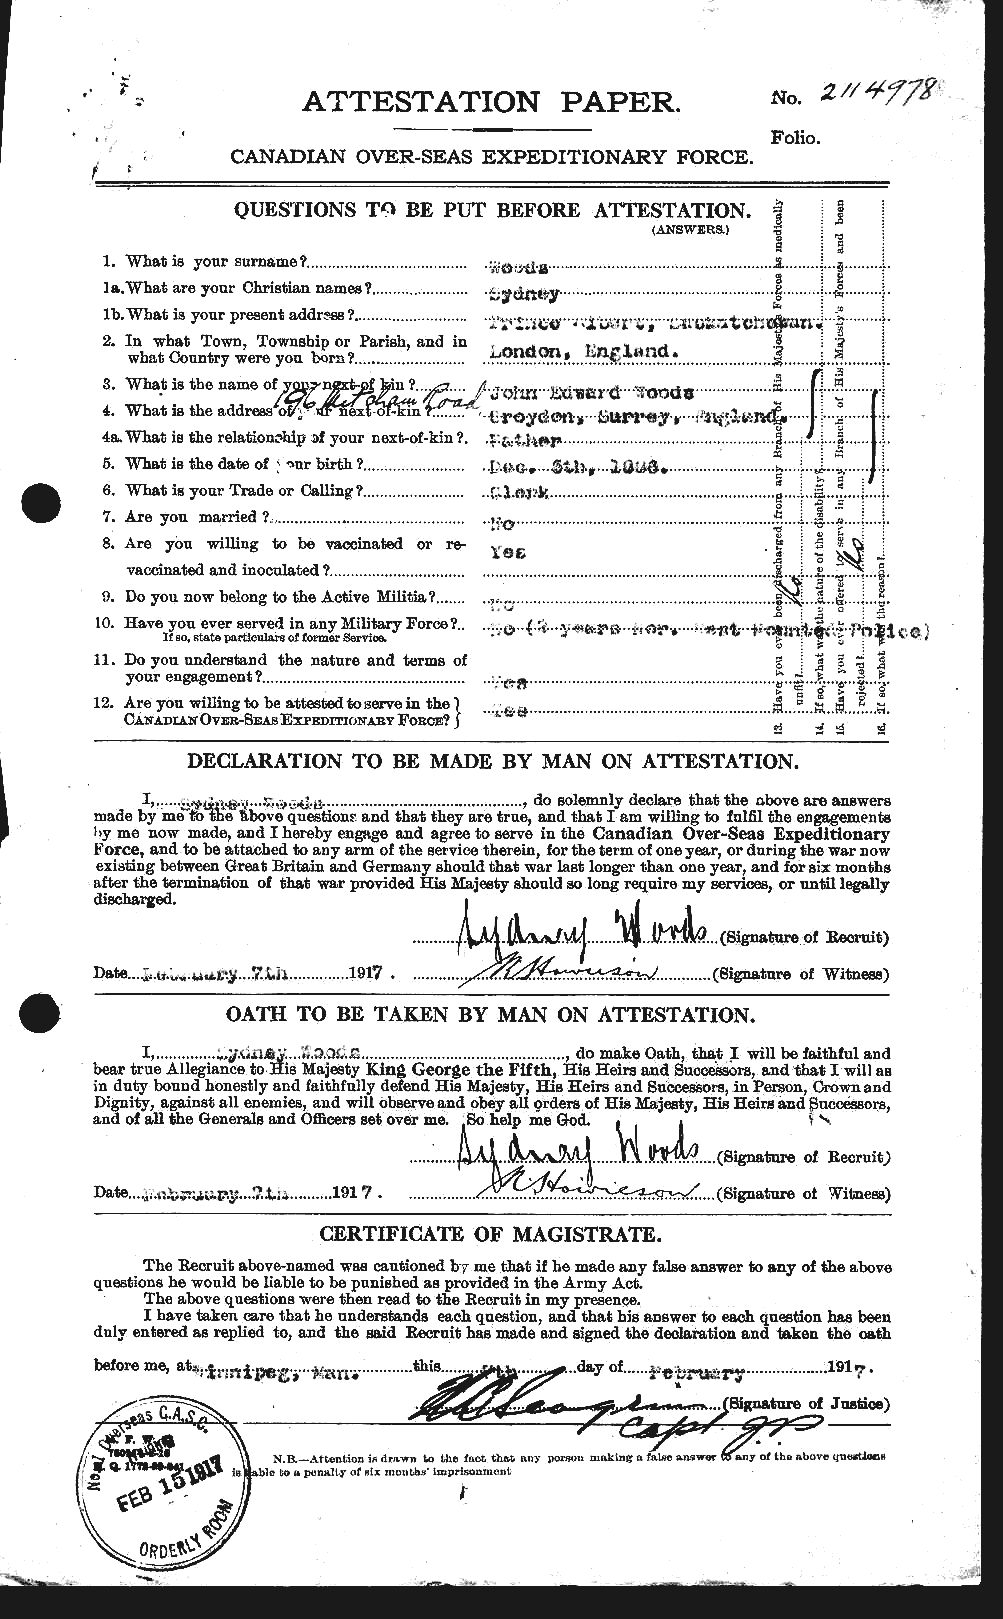 Dossiers du Personnel de la Première Guerre mondiale - CEC 683473a